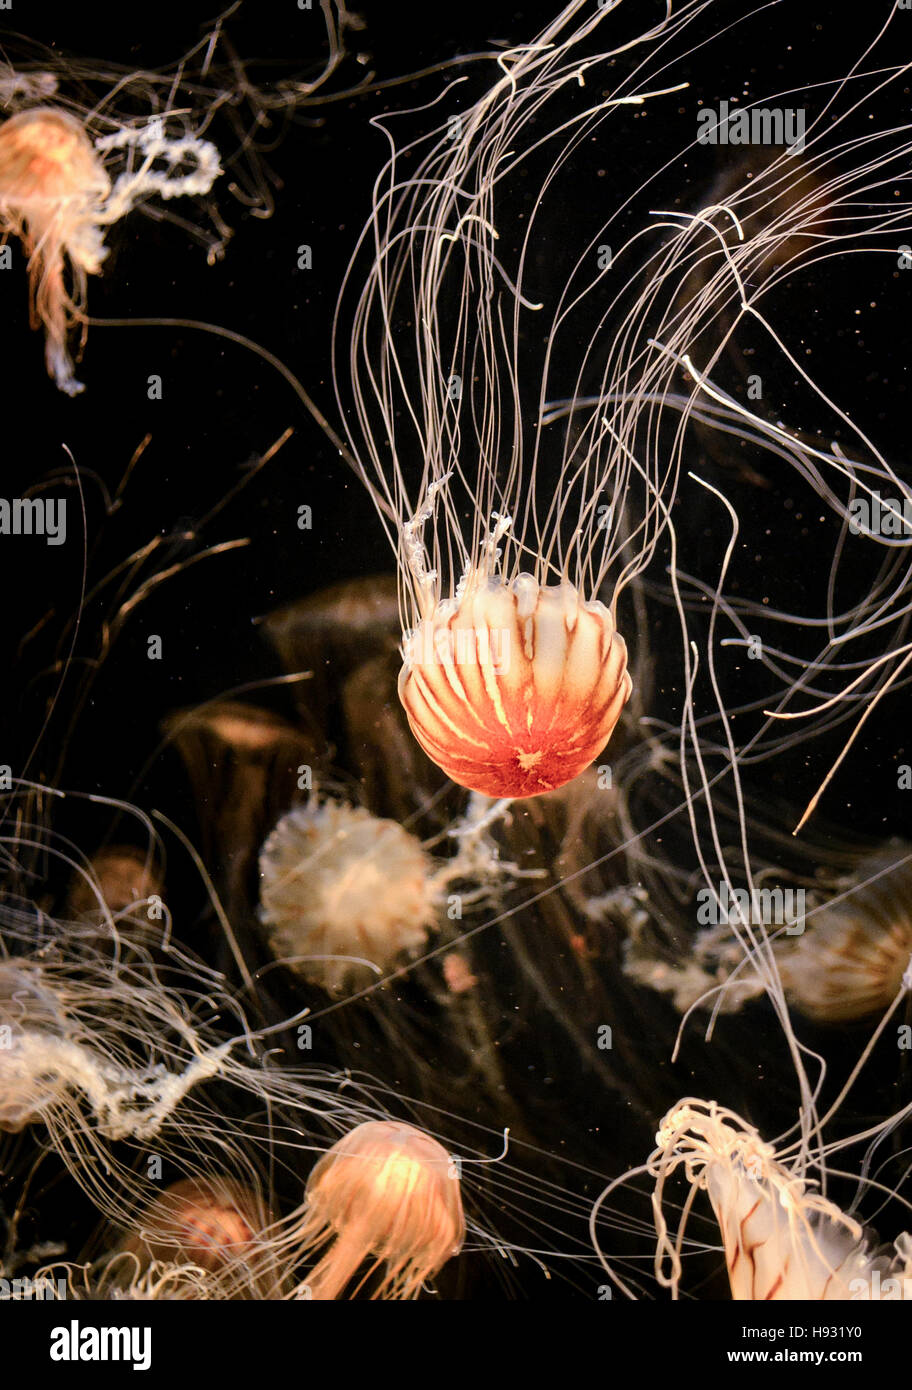 Leone la criniera di capelli o meduse in acquario contro uno sfondo scuro Foto Stock